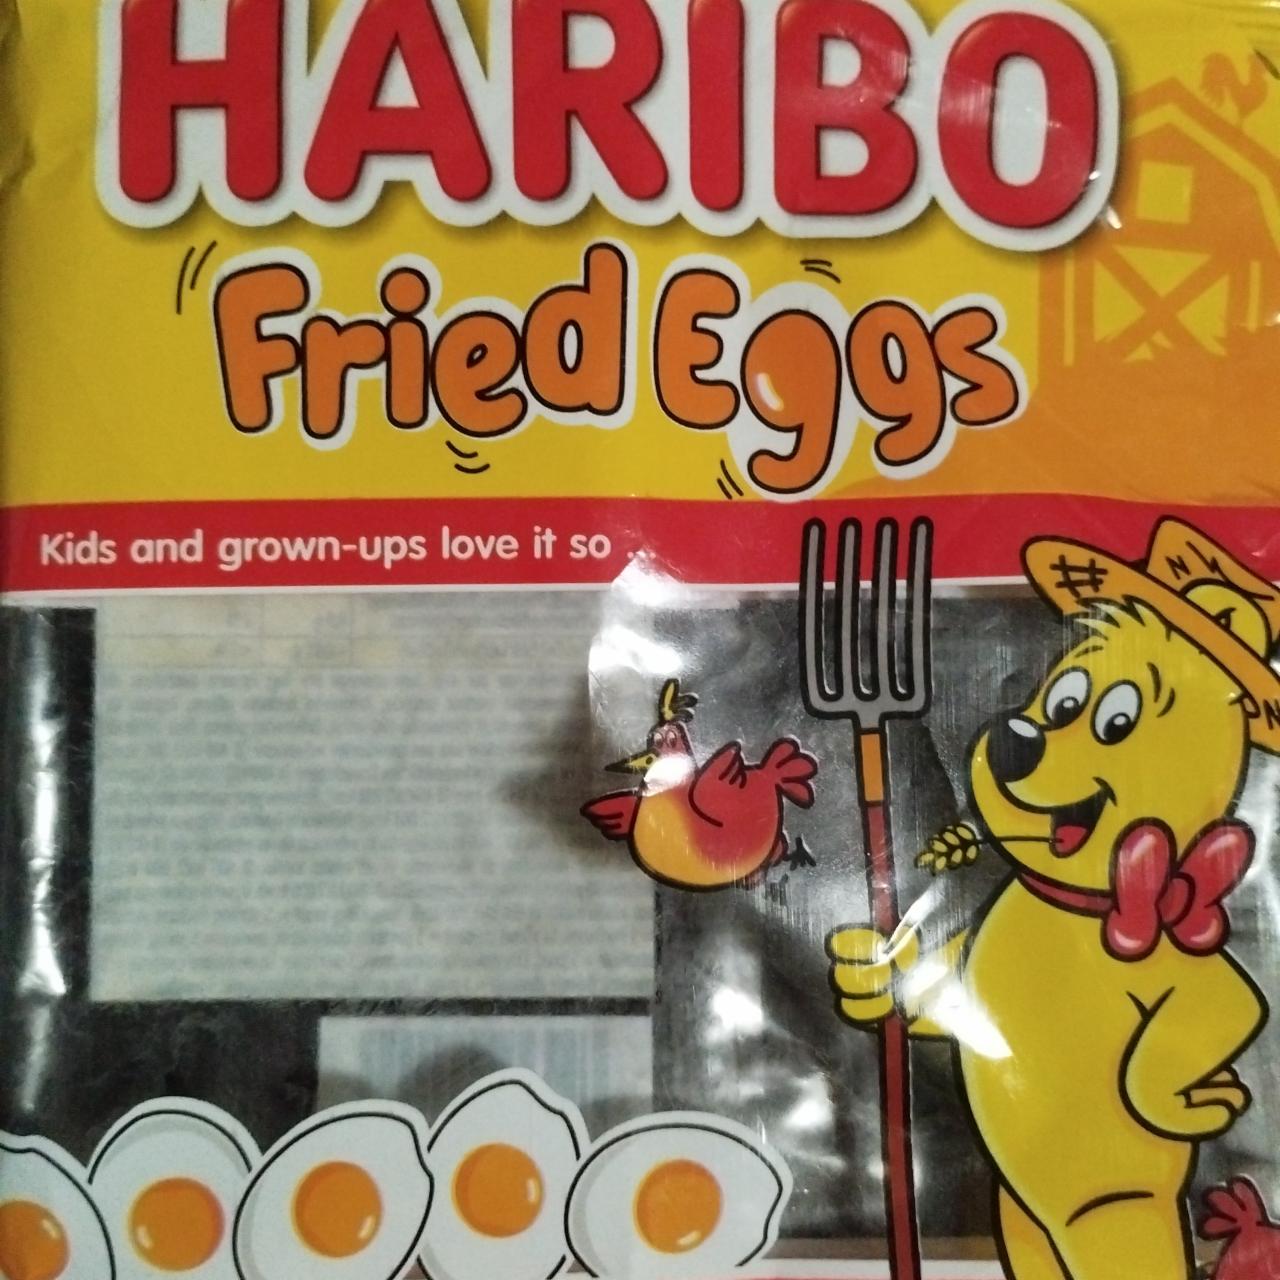 Fotografie - Fried eggs Haribo